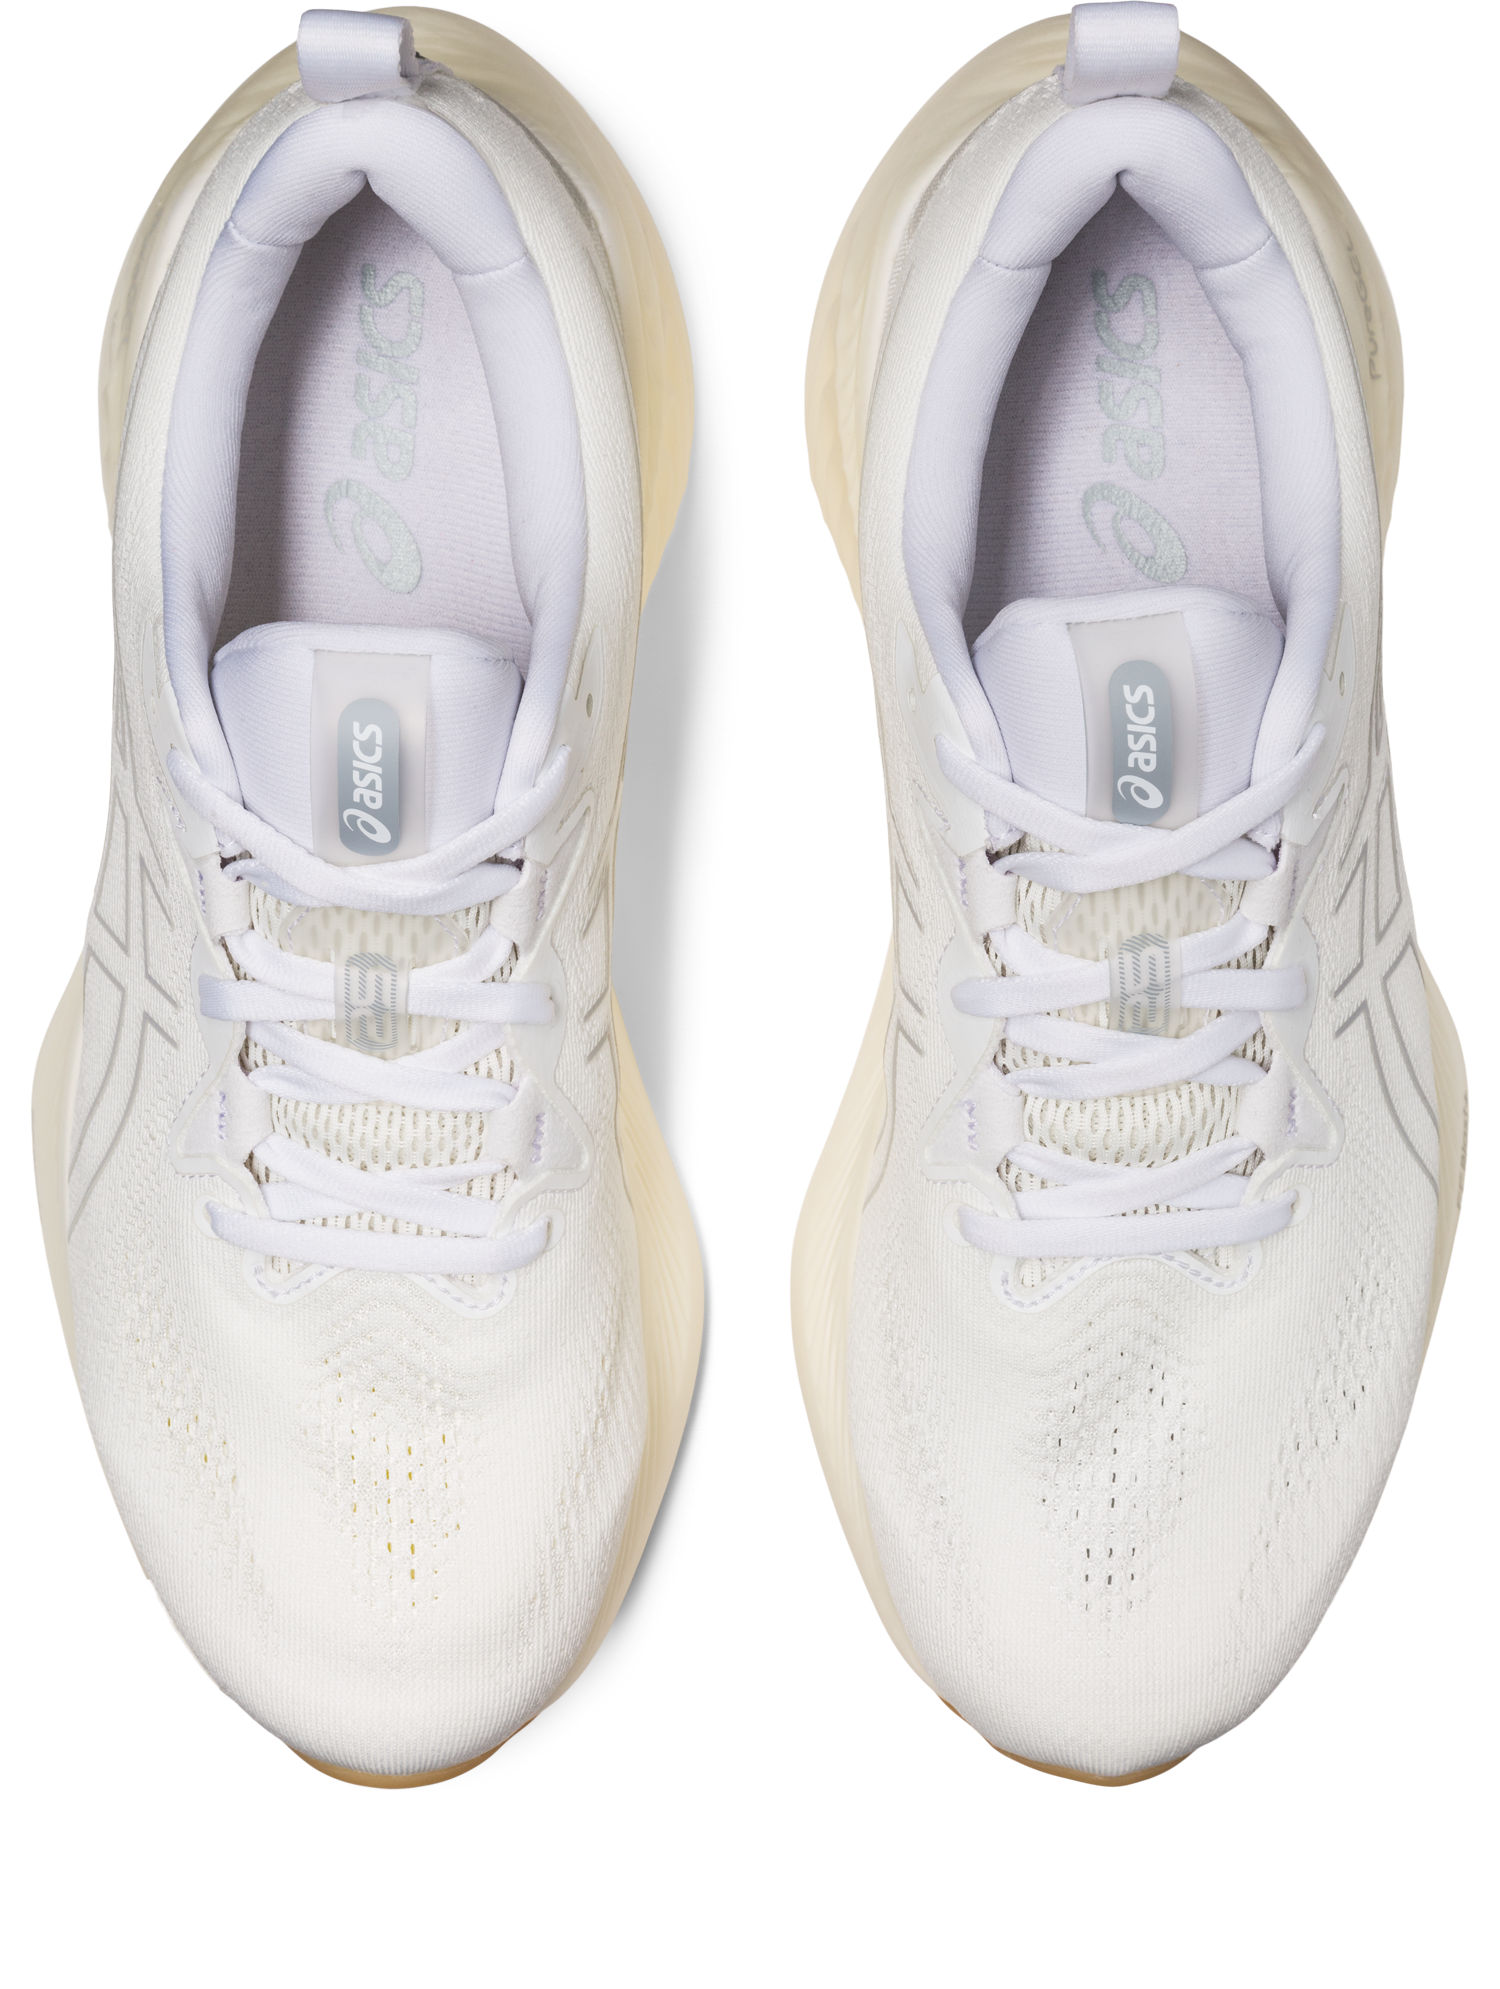 Asics Men's Gel Cumulus 25 Running Shoes in White/White